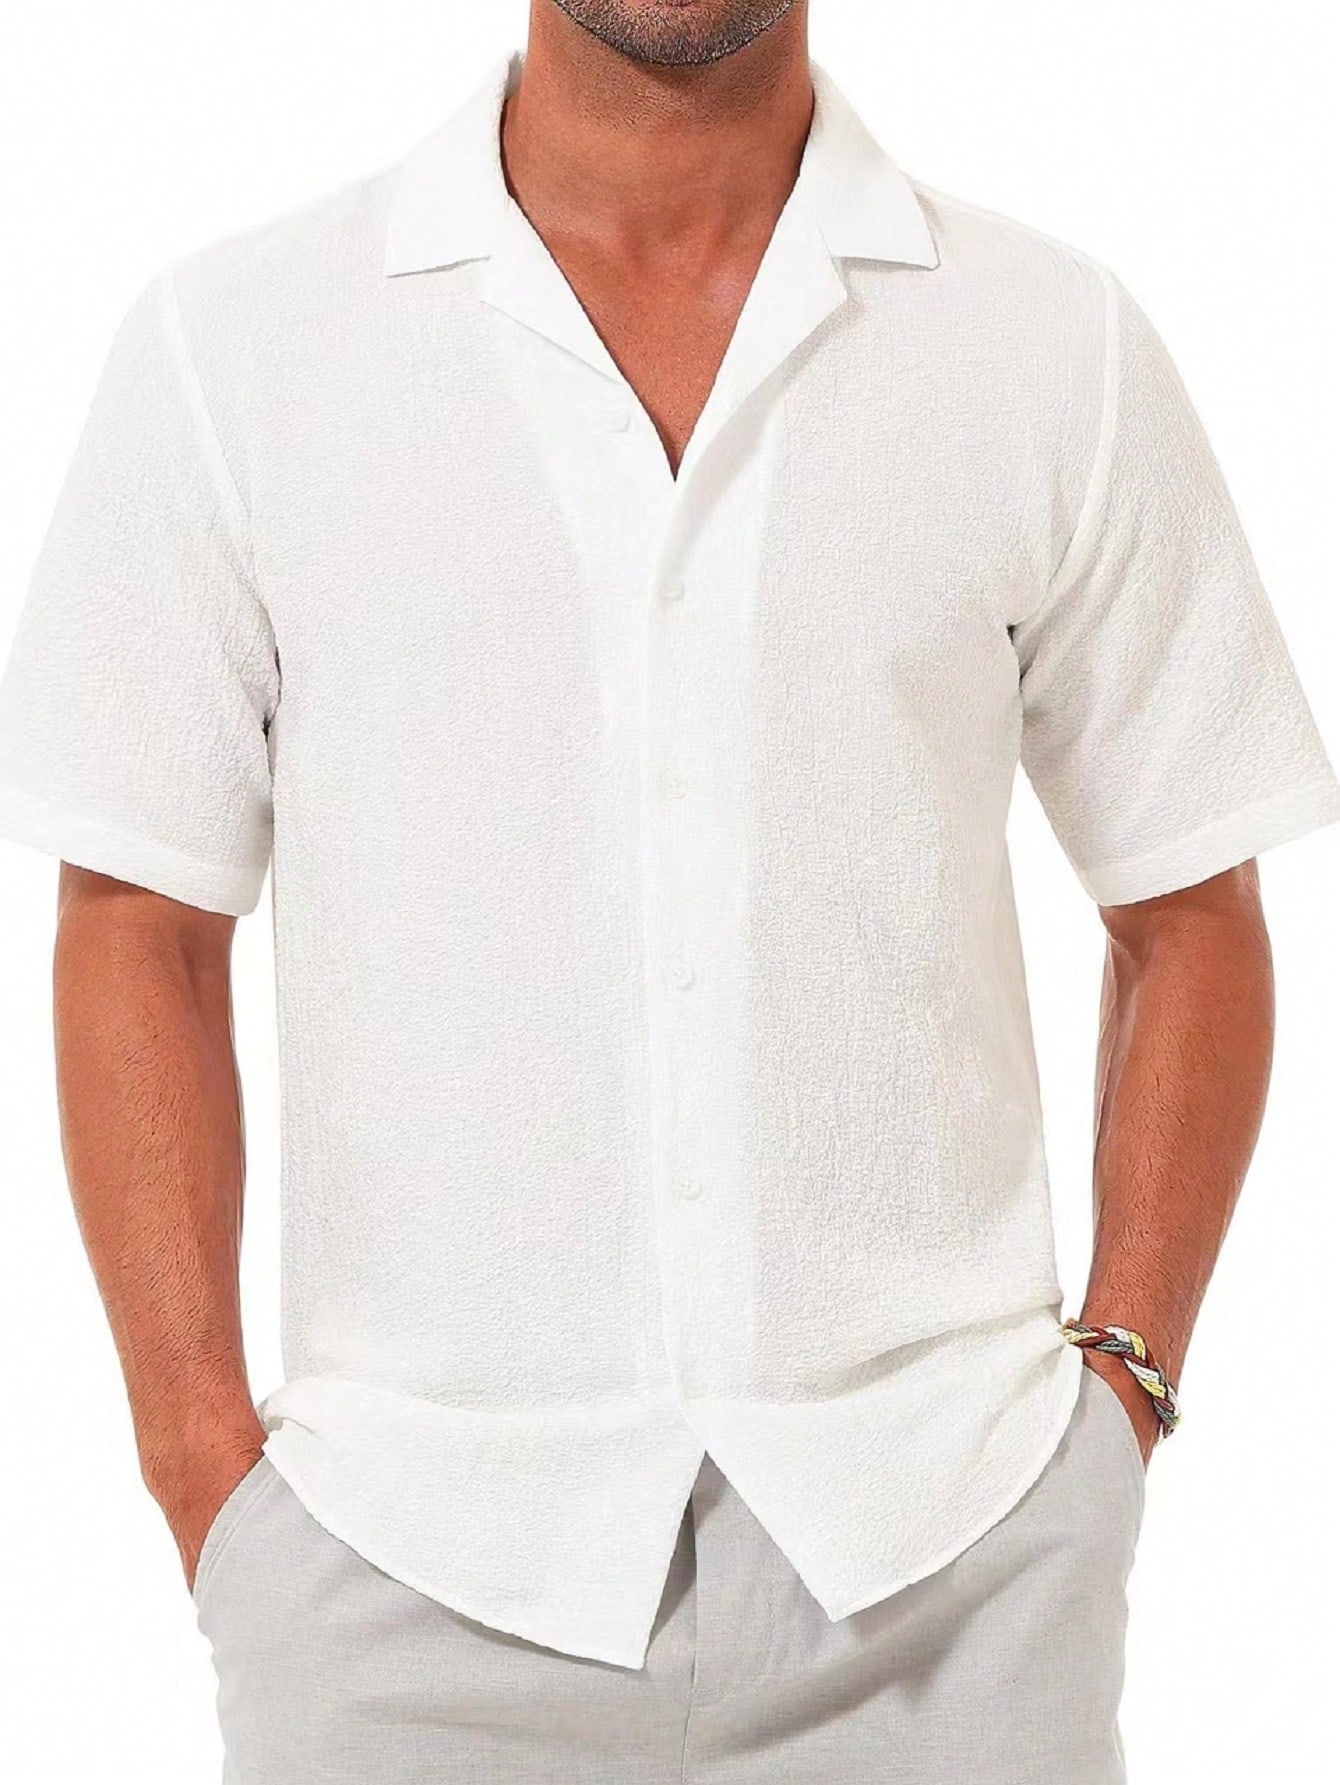 Мужская повседневная рубашка с коротким рукавом на пуговицах, белый рубашка мужская с коротким рукавом цифровым принтом на пуговицах повседневная домашняя одежда лето